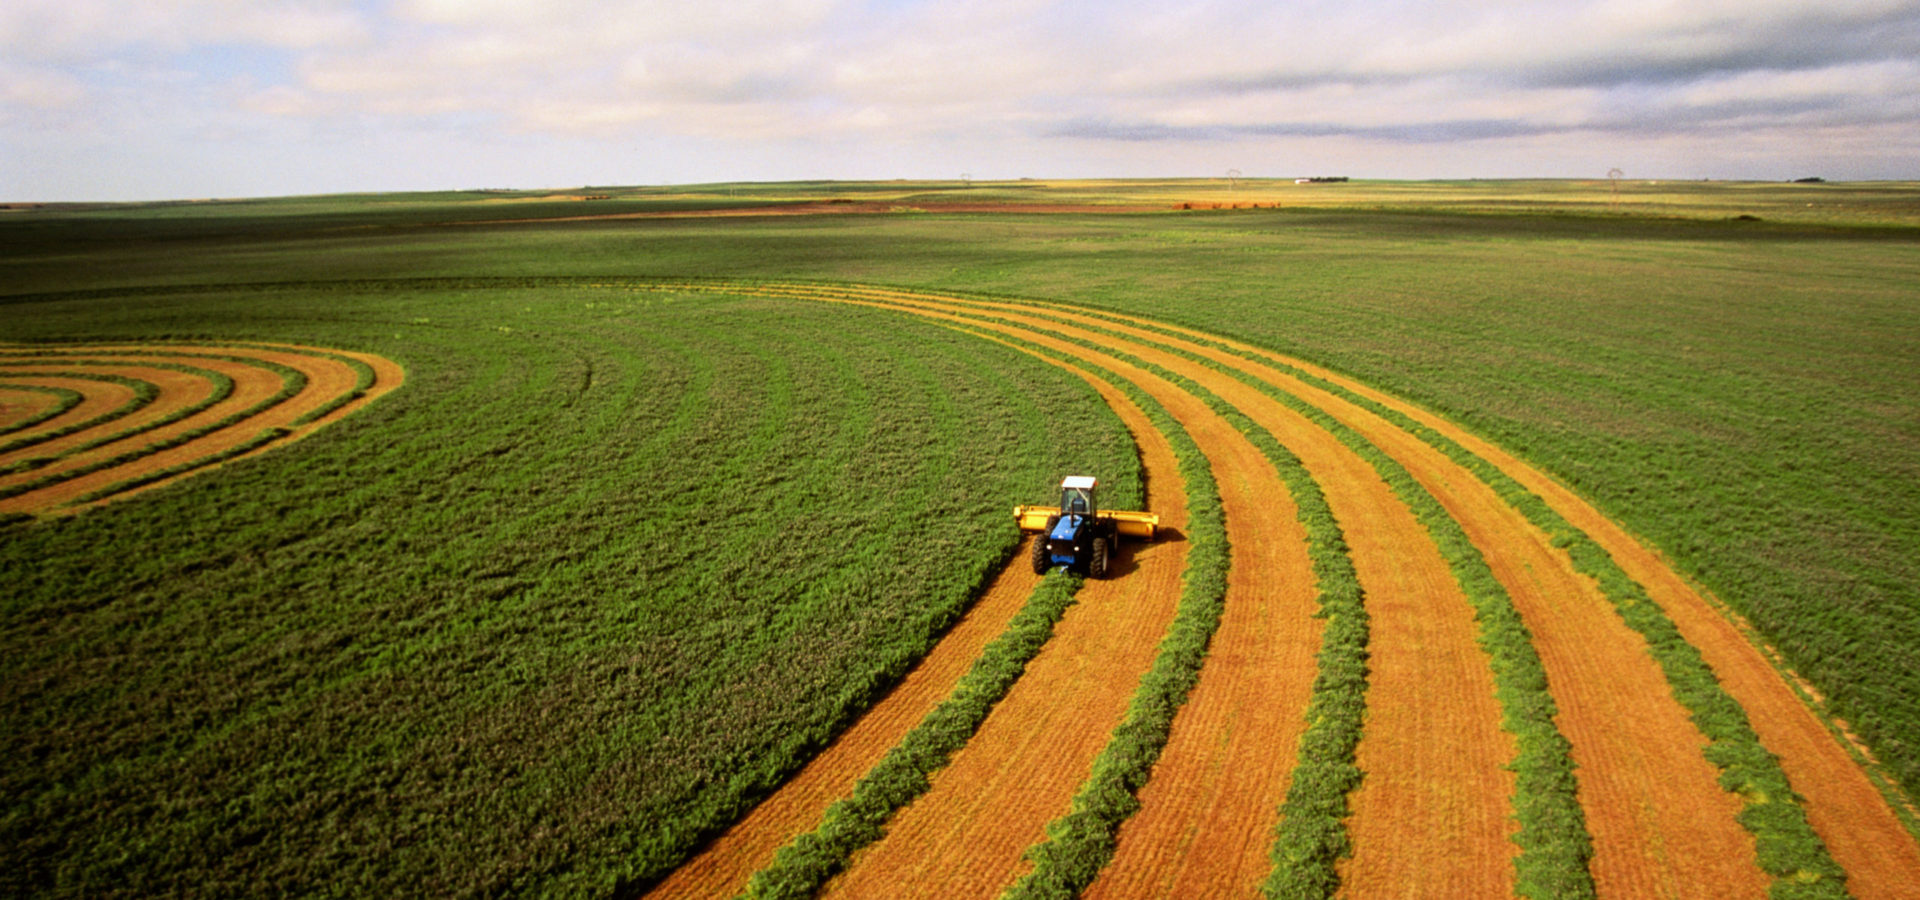 Harvesting alfalfa crop, aerial view